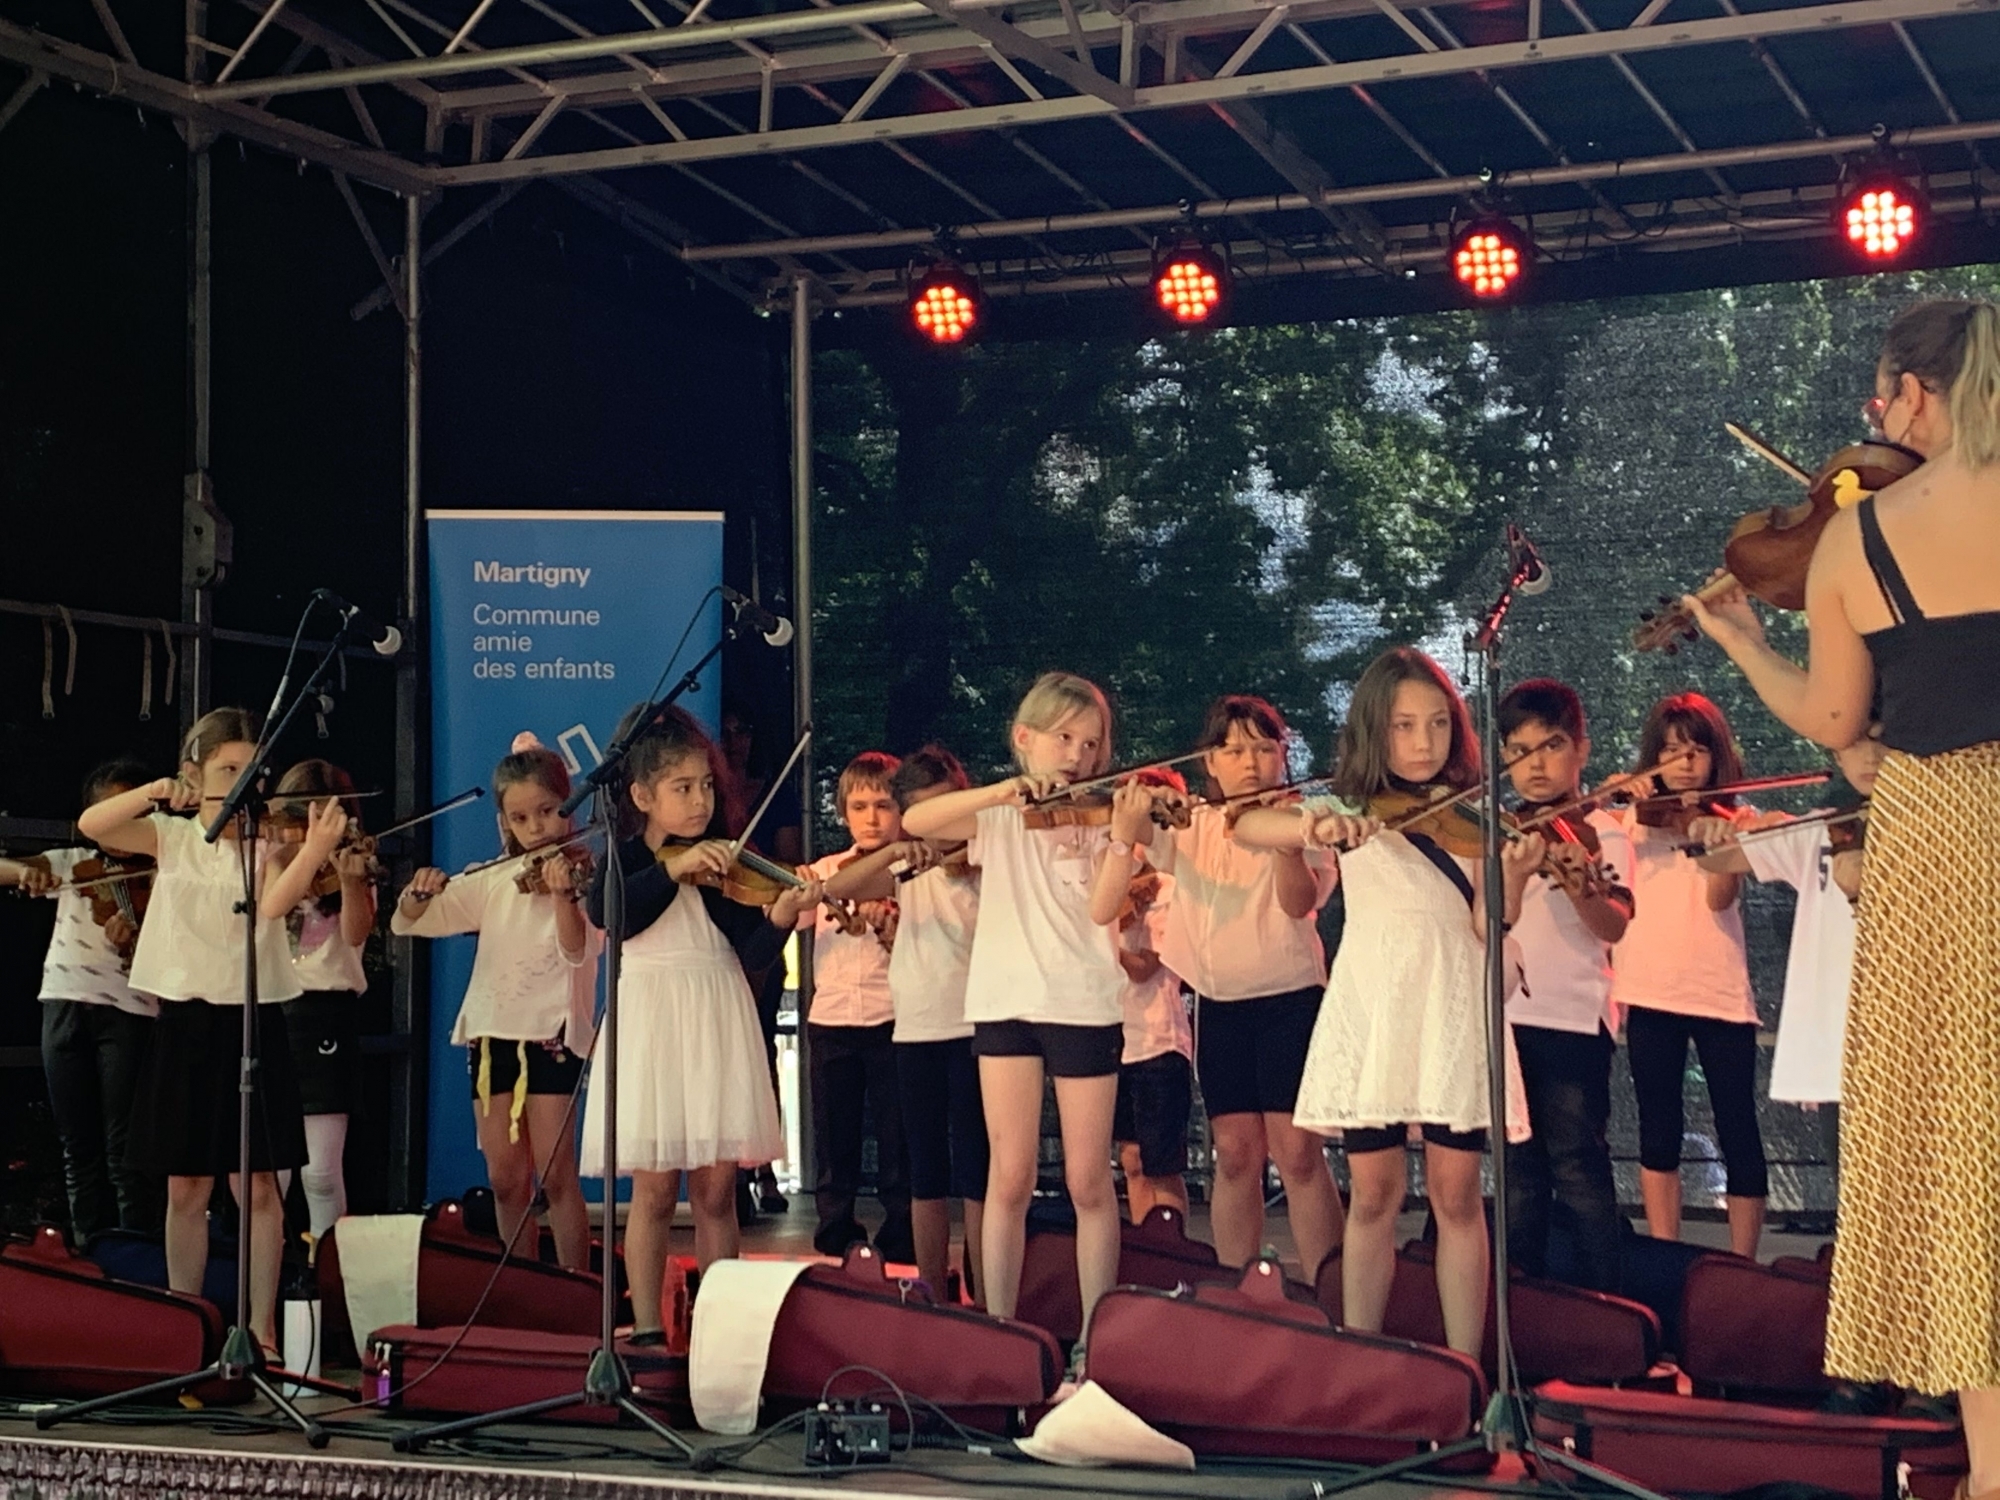 La cérémonie de remise du label de l'Unicef "Commune amie des enfants" à Martigny a été animée par des jeunes de la ville, à l'exemple de cette classe de violon.